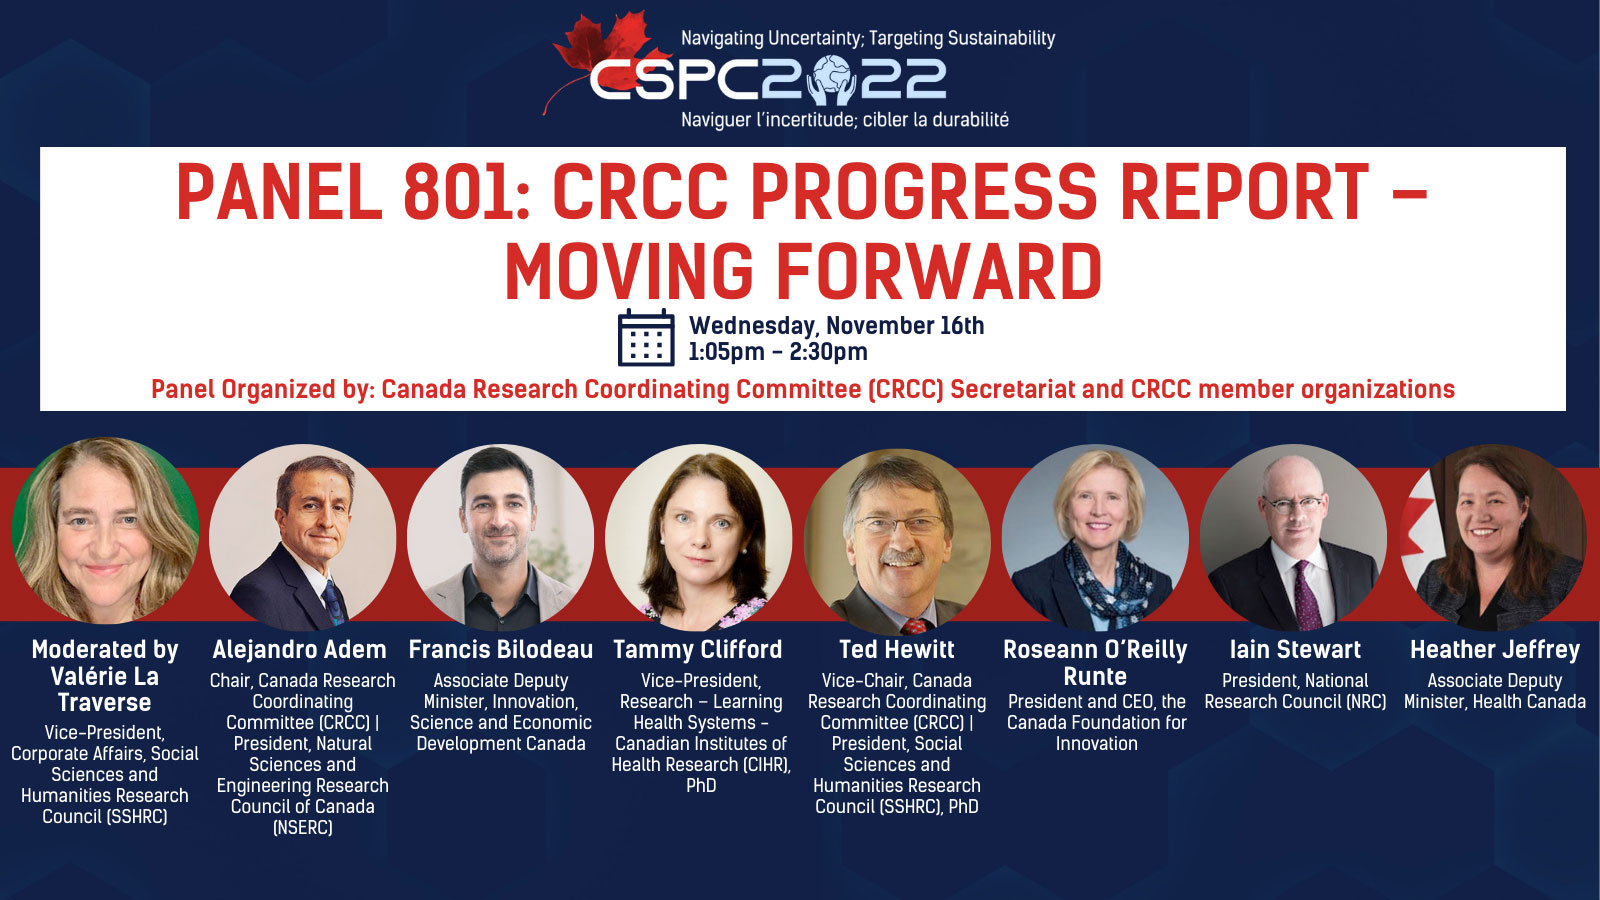 CRCC panel participation at CSPC 2022